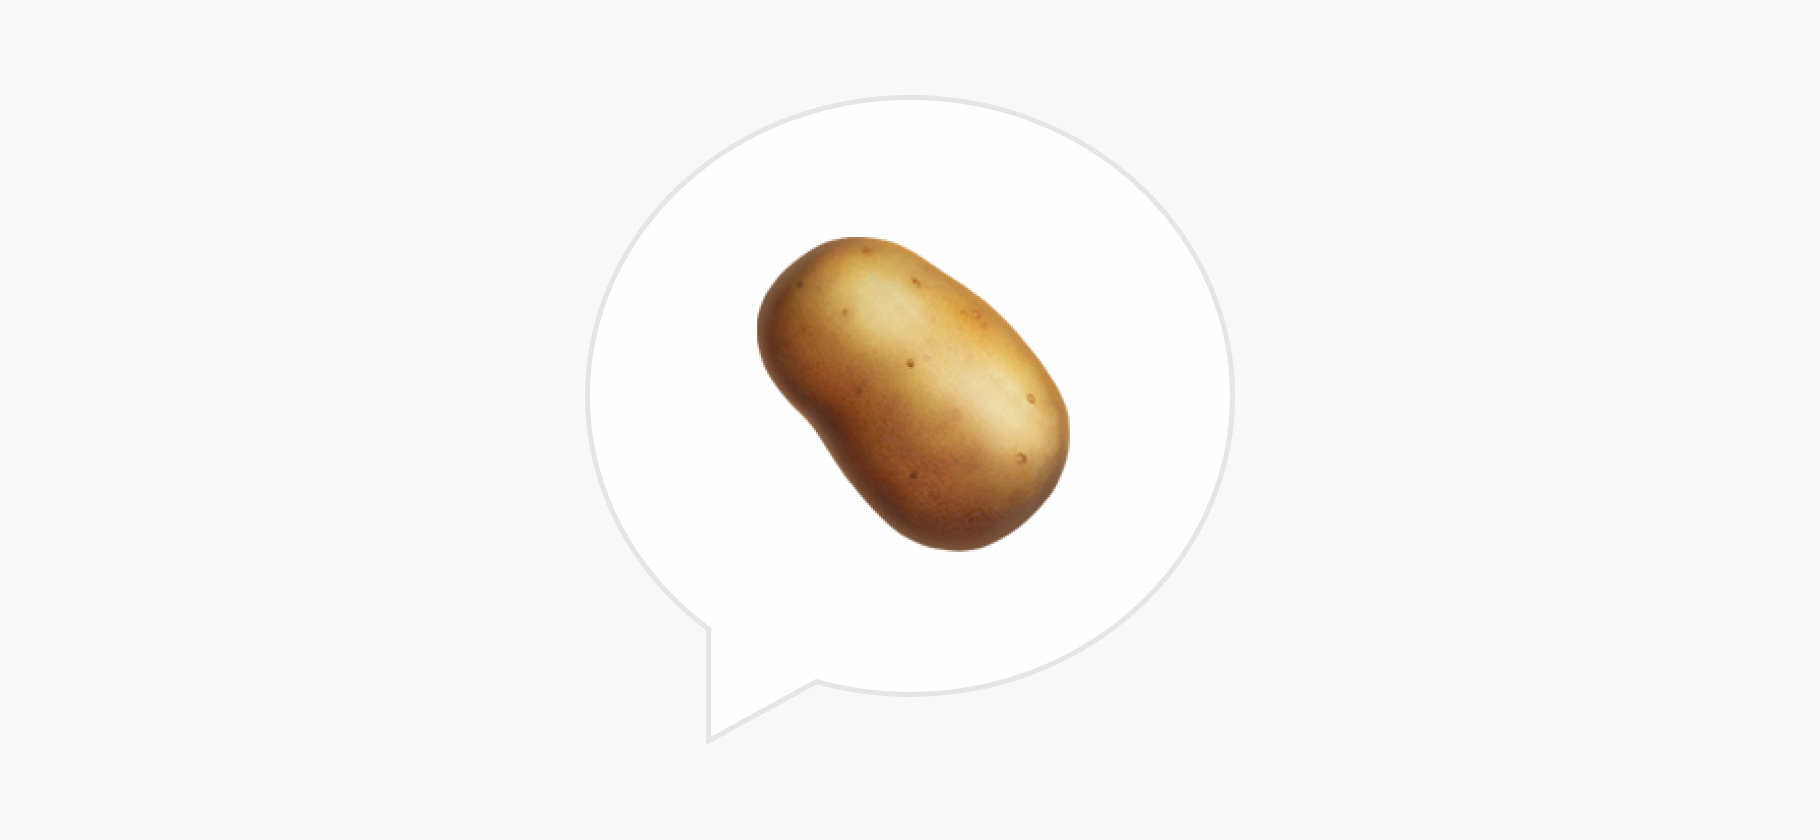 Как правильно жарить картошку?